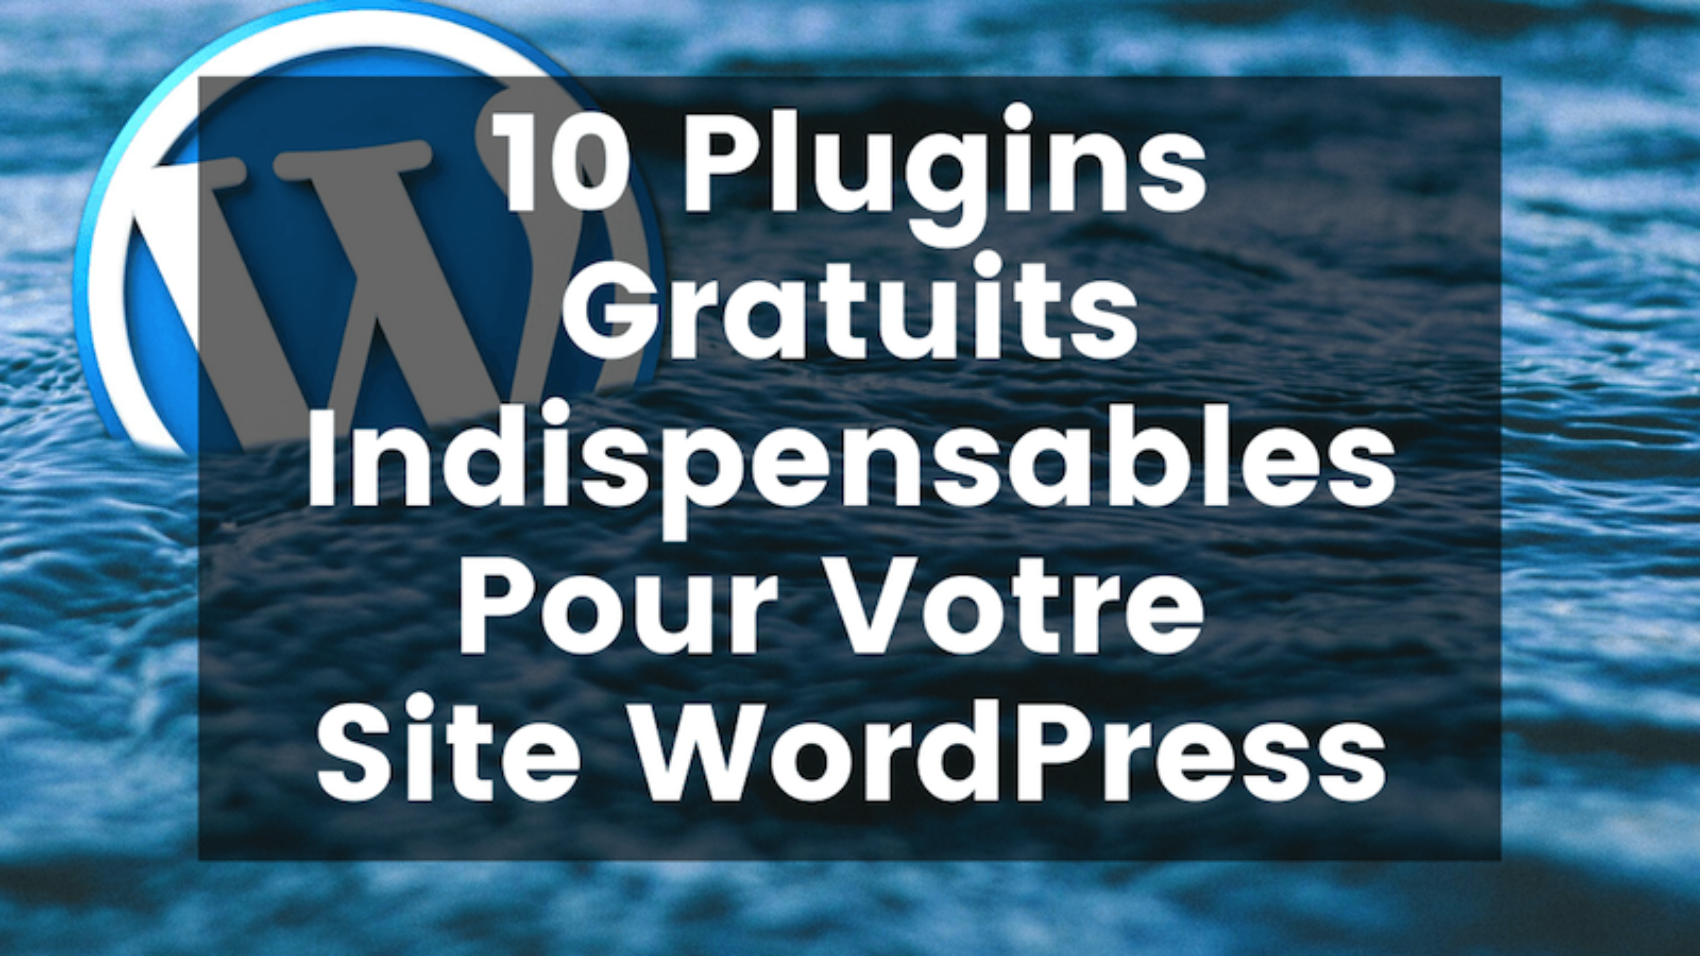 10 plugins gratuits indispensables pour votre site WordPress